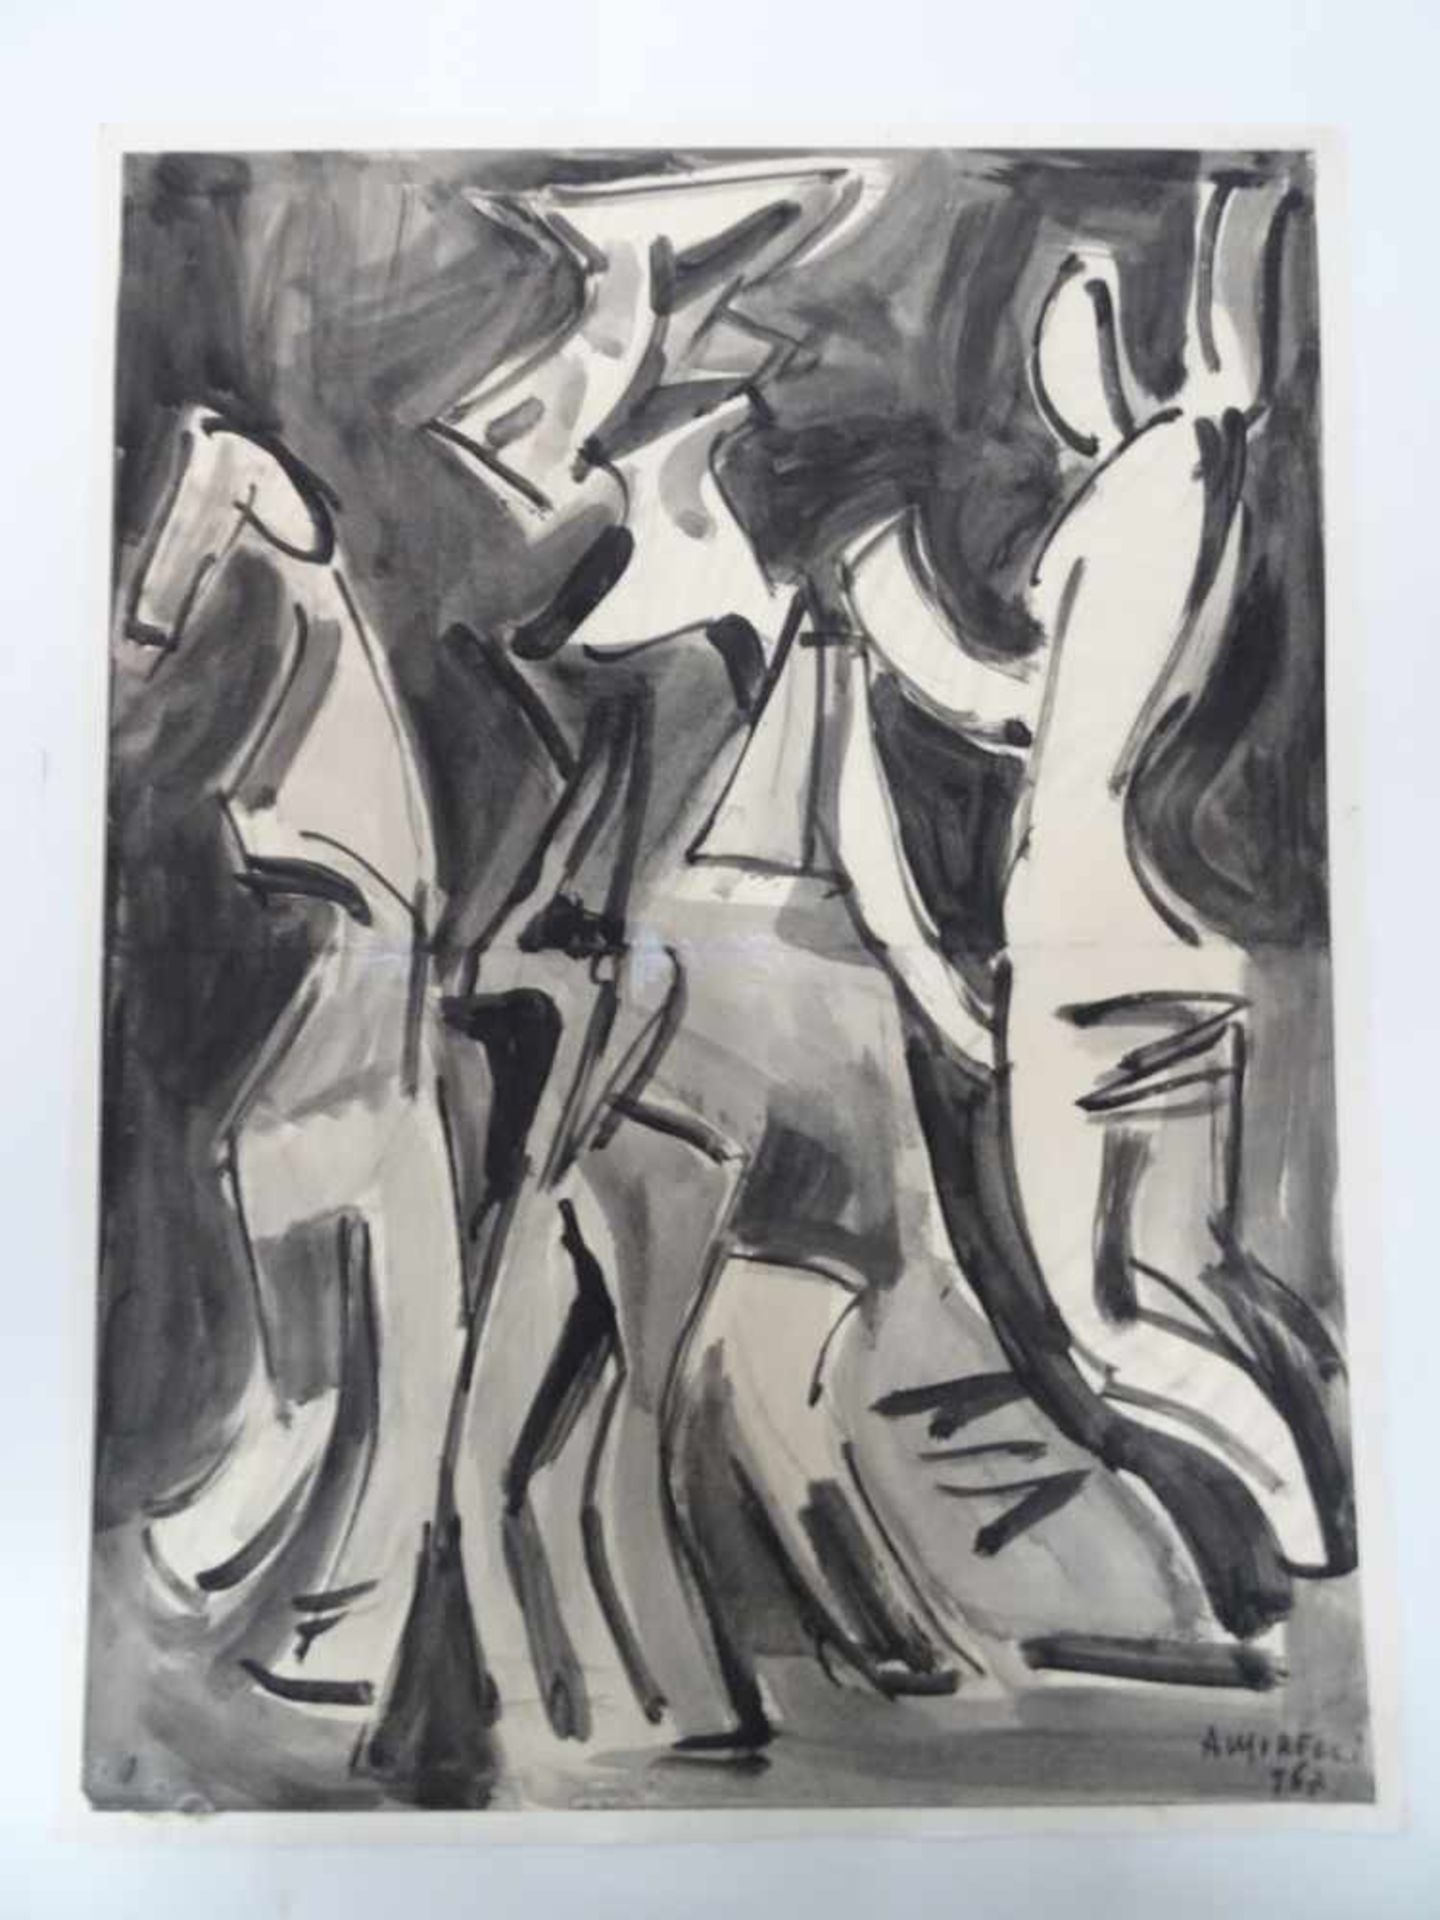 Abstrakte Personen in Schwarz-Weiß.Alfonso Amorelli (1898 - Palermo - 1969). Aquarell auf Papier,